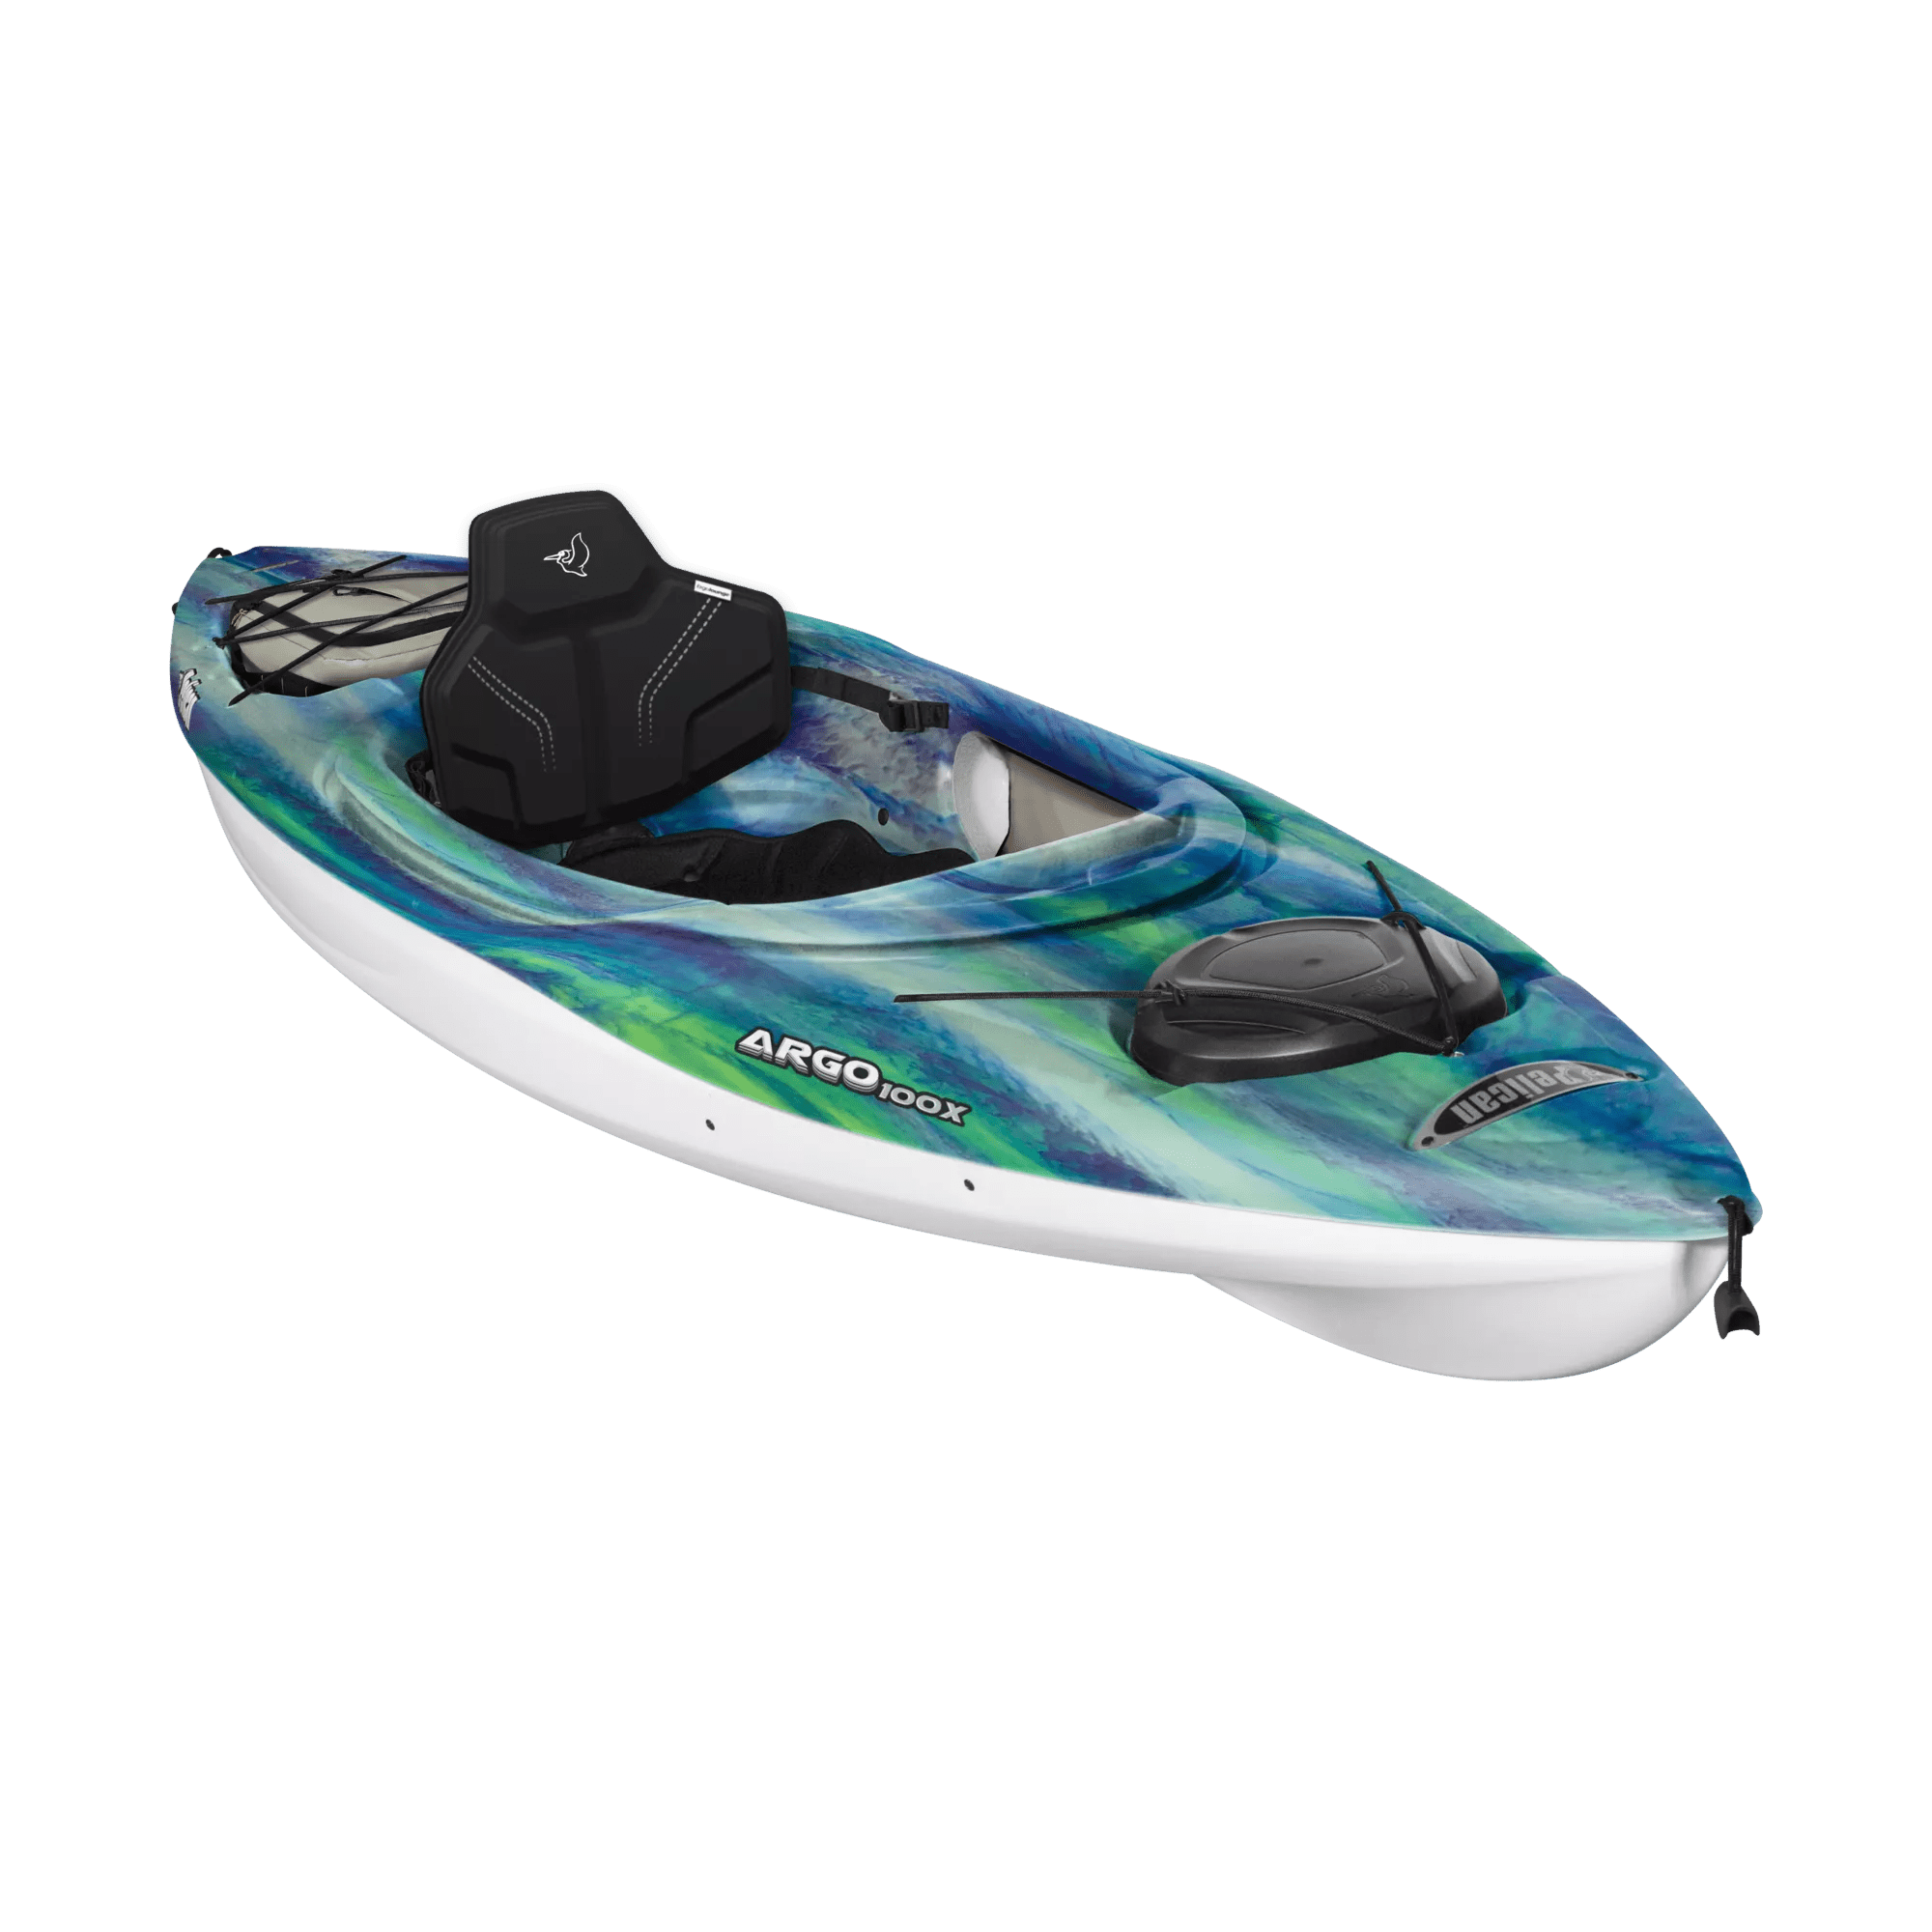 PELICAN - Argo 100X EXO Recreational Kayak - Green - KFF10P203-00 - ISO